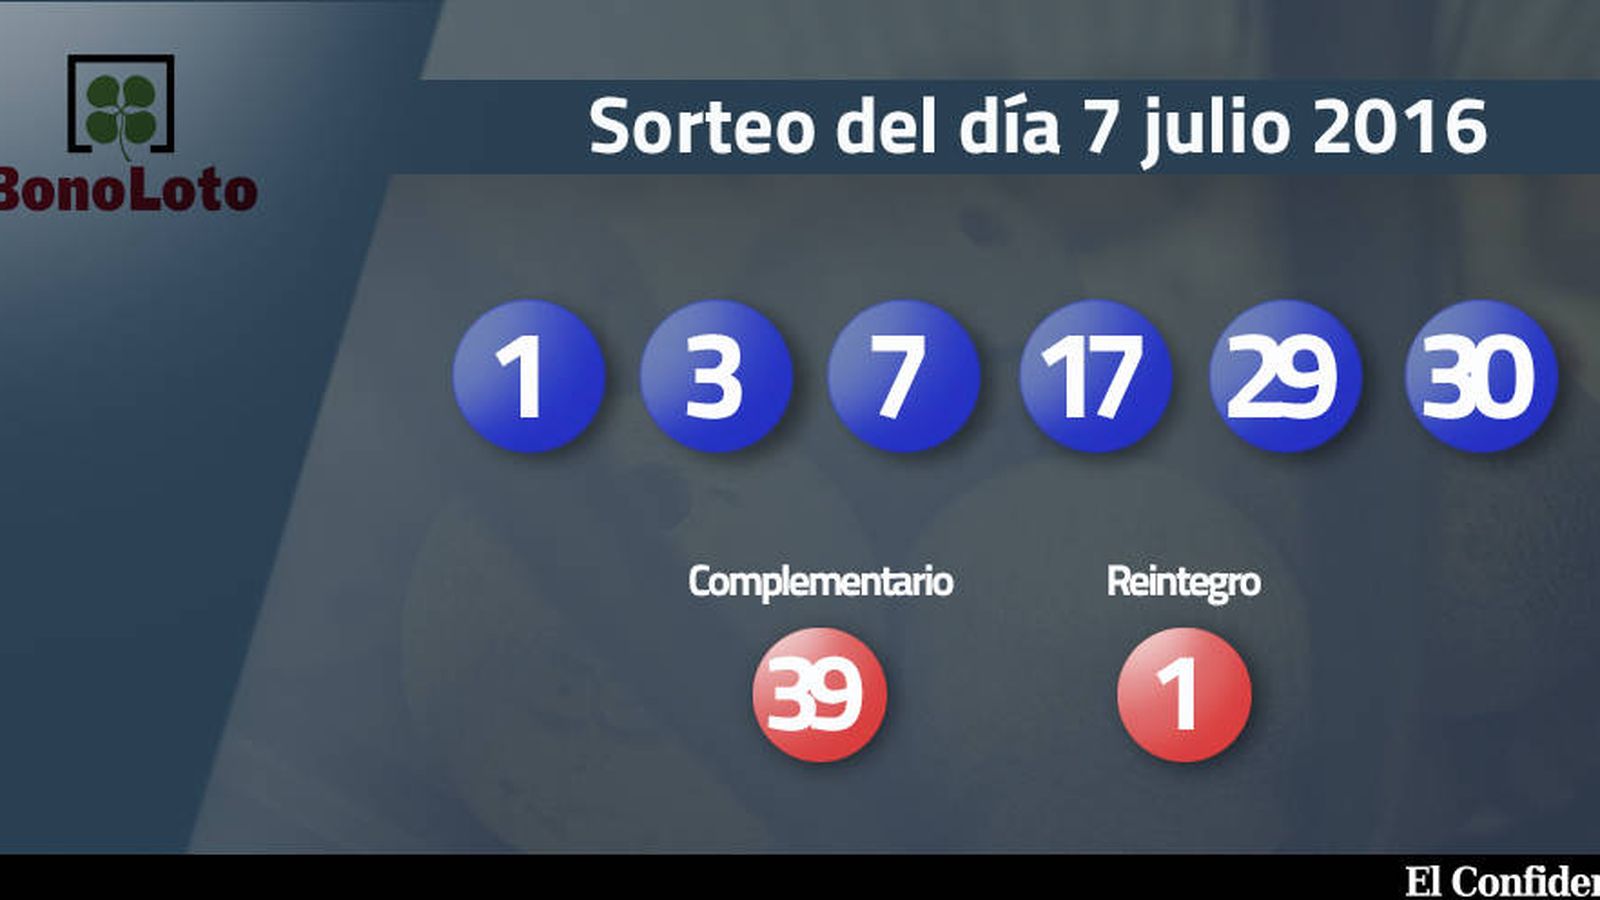 Foto: Resultados del sorteo de la Bonoloto del 7 julio 2016 (EC)